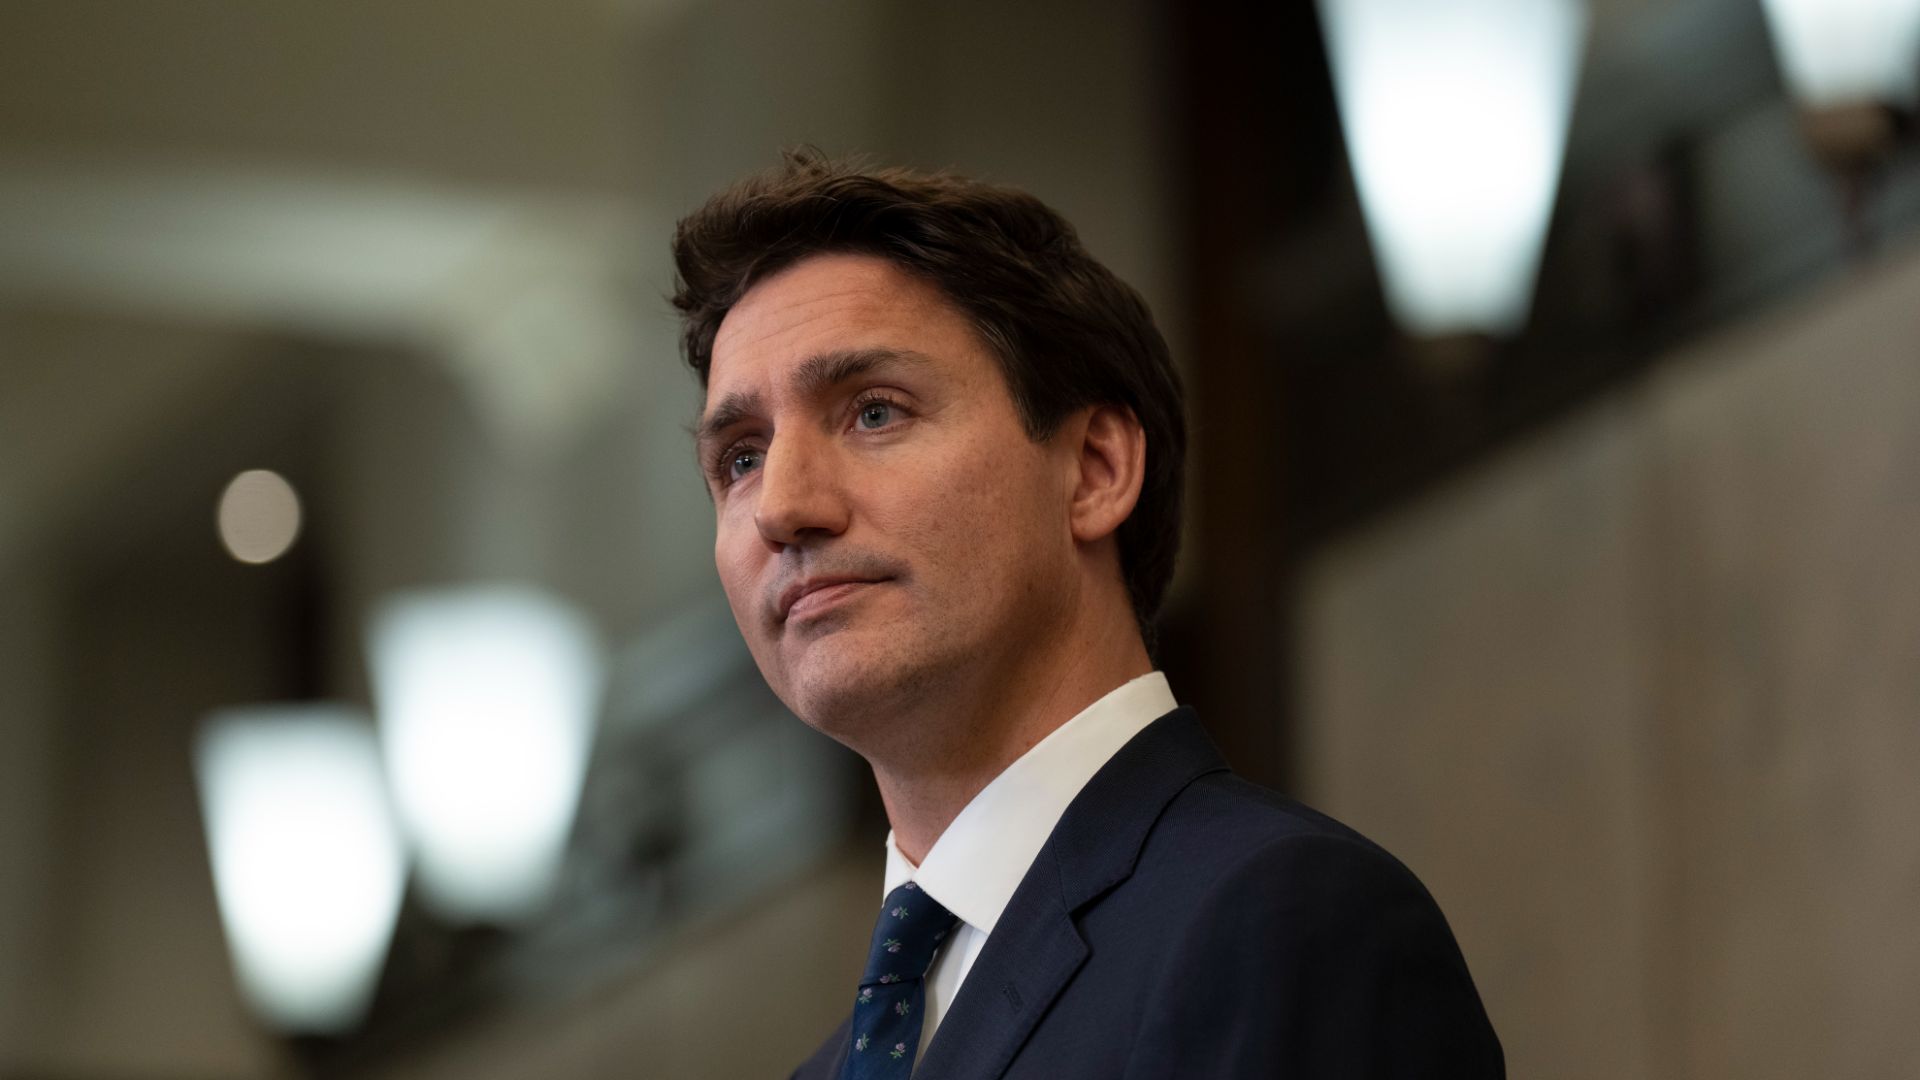 «De bons emplois pour la classe moyenne, de l'air pur et des technologies conçues au Canada: voilà notre vision d'une économie solide et d'un avenir prometteur», a indiqué Justin Trudeau.